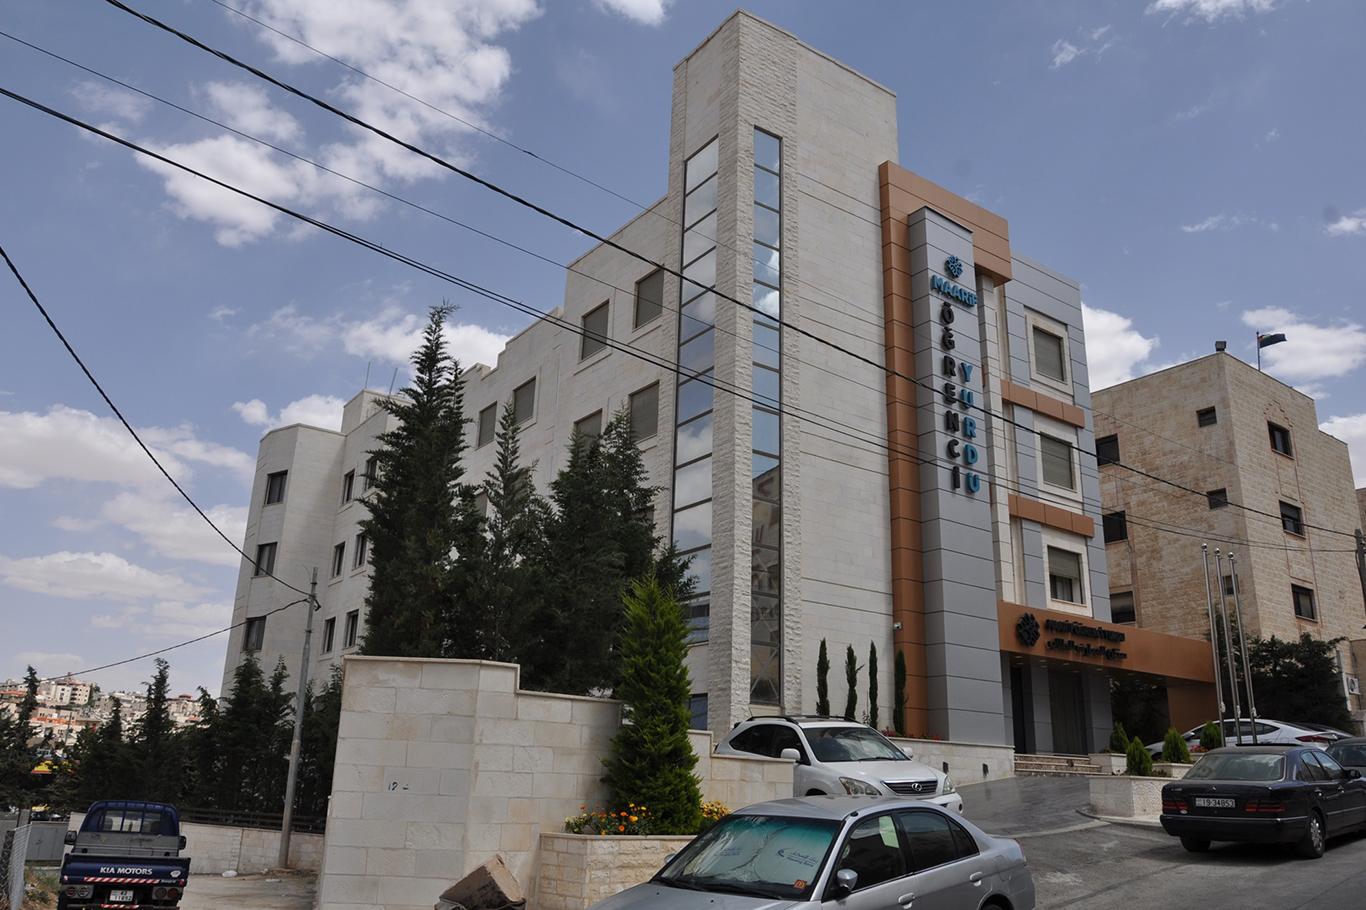 Ürdün'de Maarif Öğrenci Yurdu açıldı